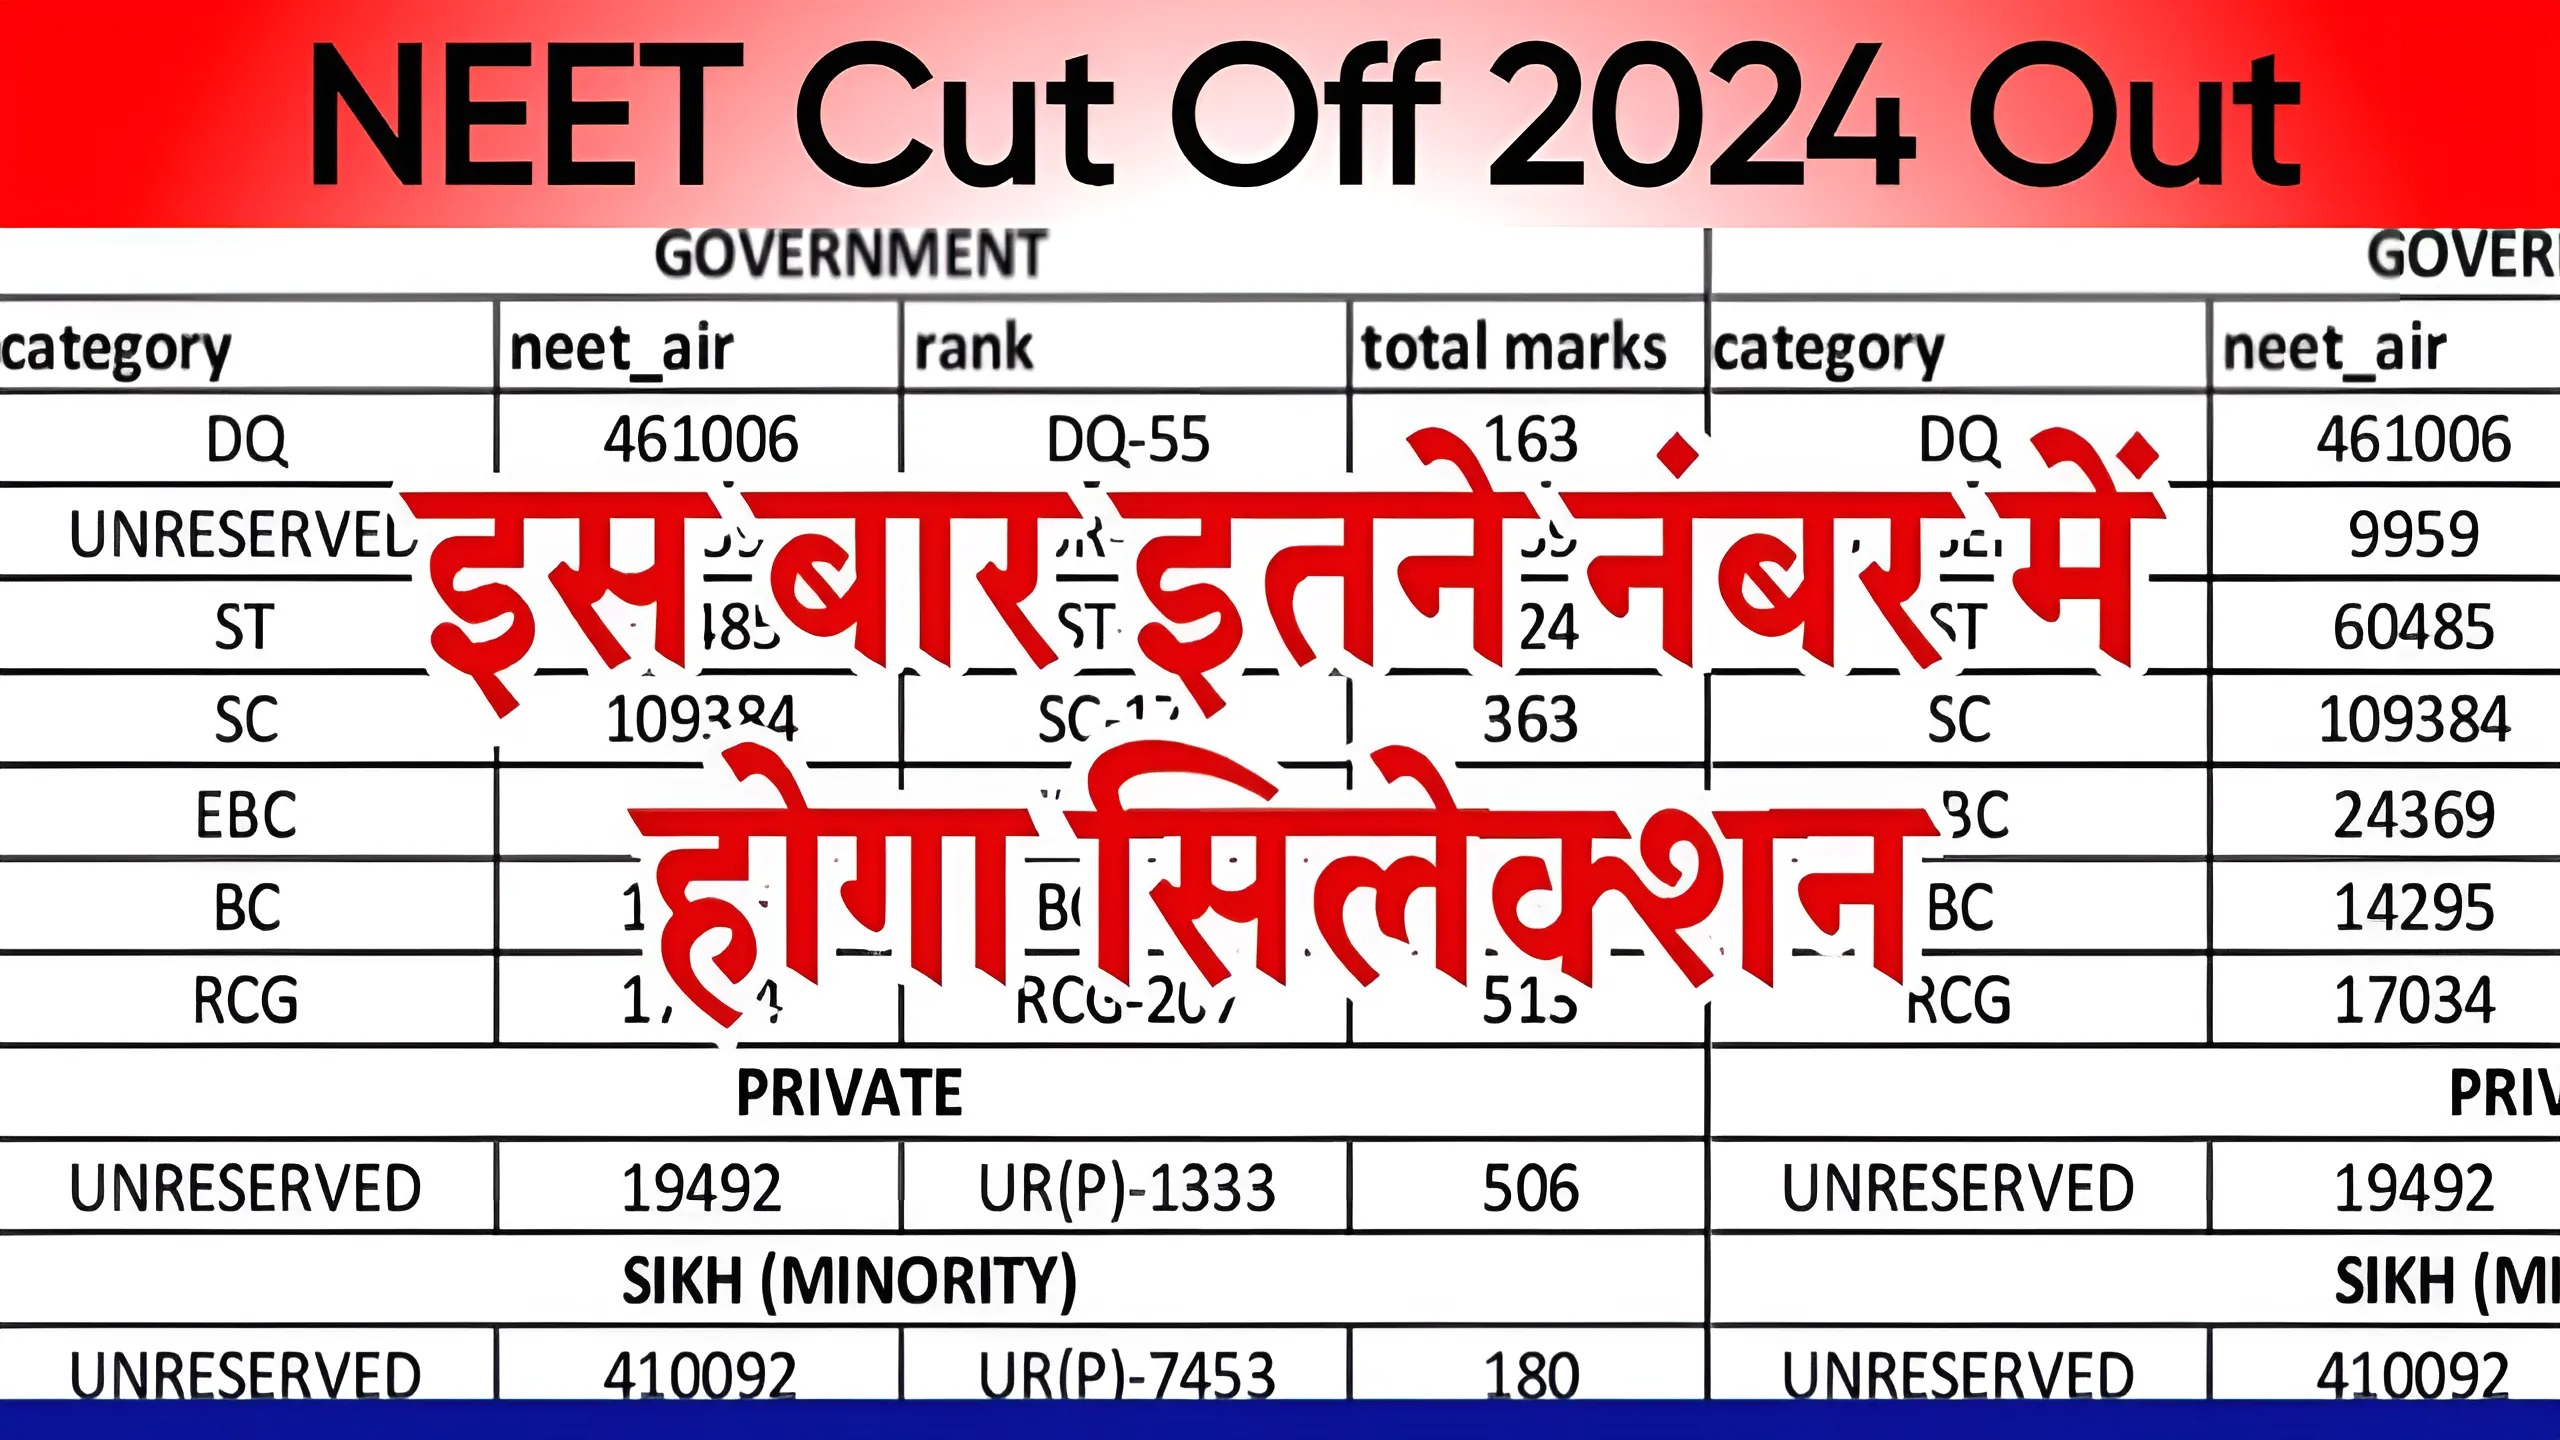 NEET Cut Off 2024 Out